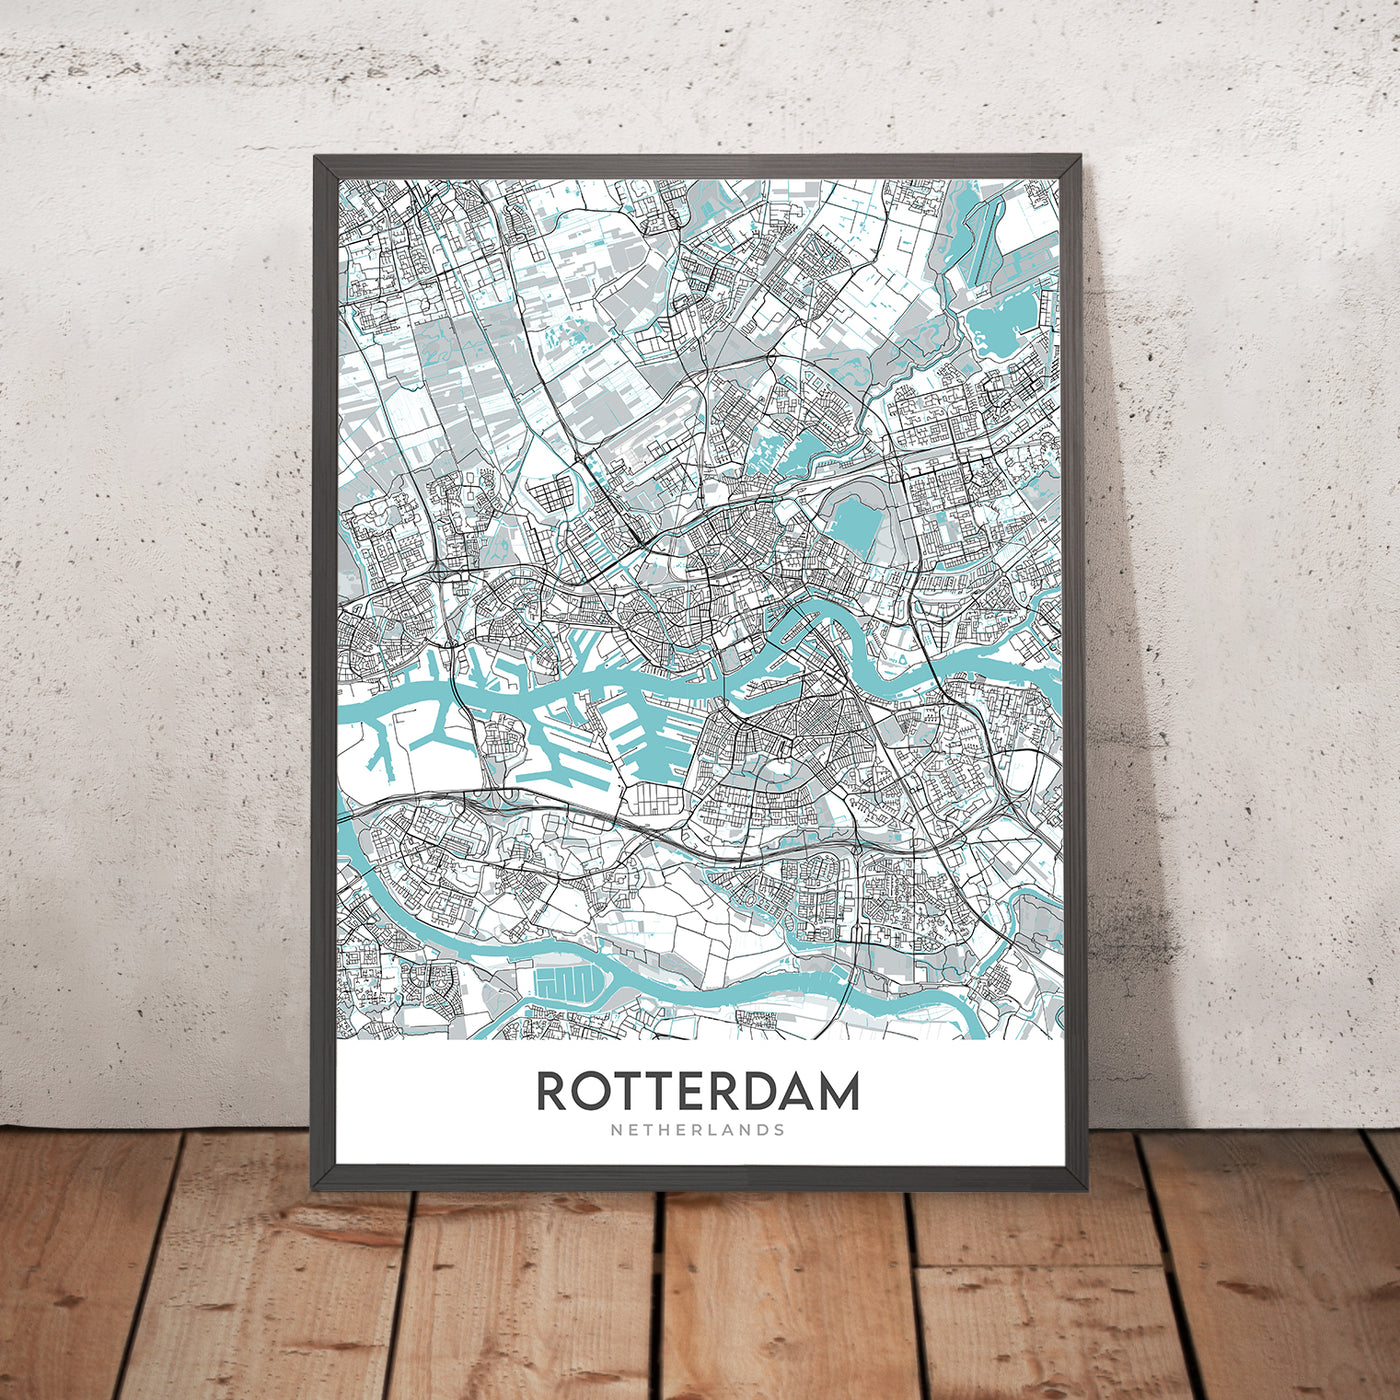 Plan de la ville moderne de Rotterdam, Pays-Bas : Pont Erasmus, Euromast, De Kuip, Kunsthal, Musée Boijmans Van Beuningen